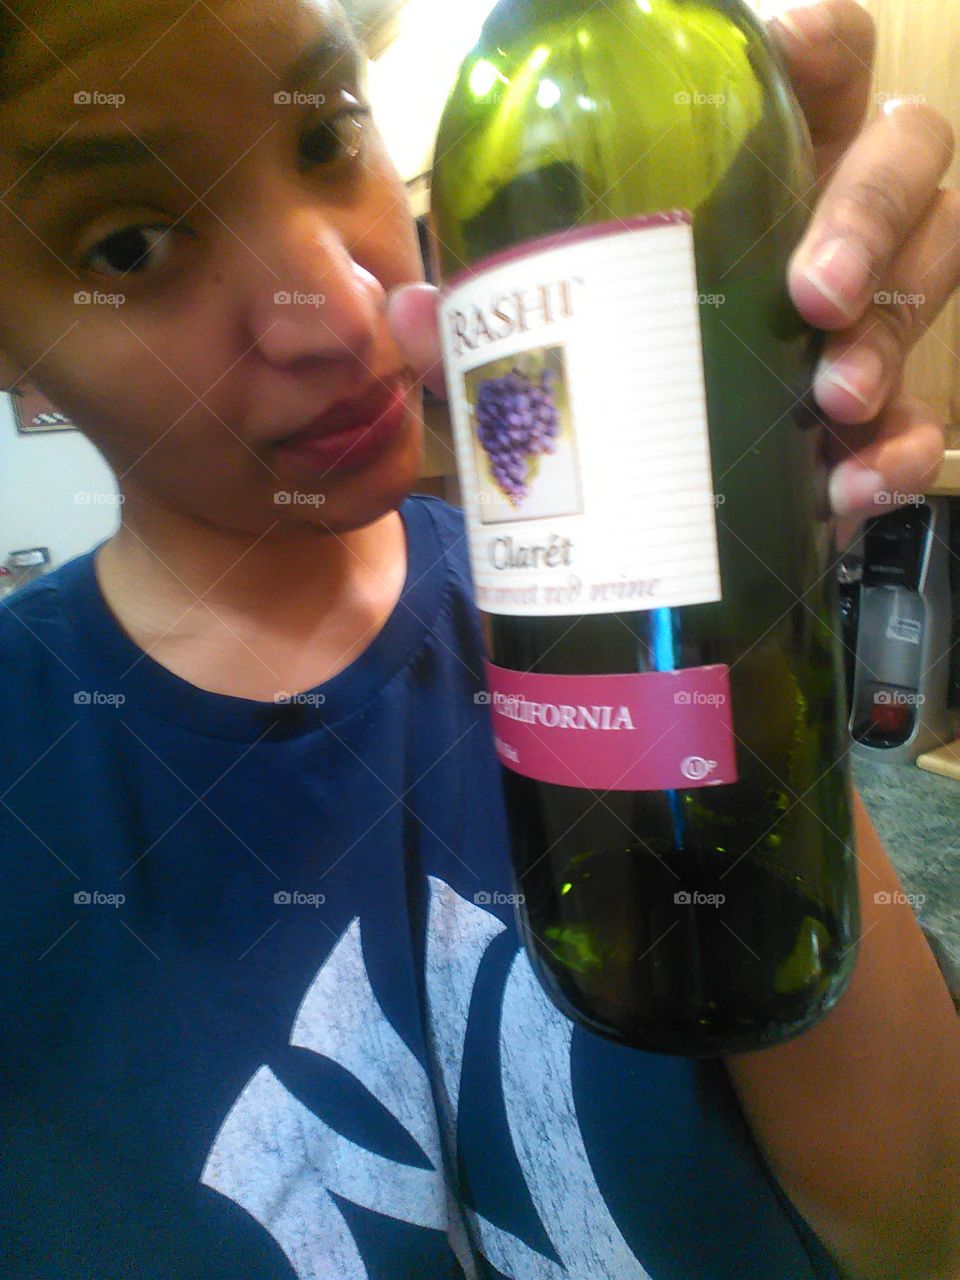 Because I love wine